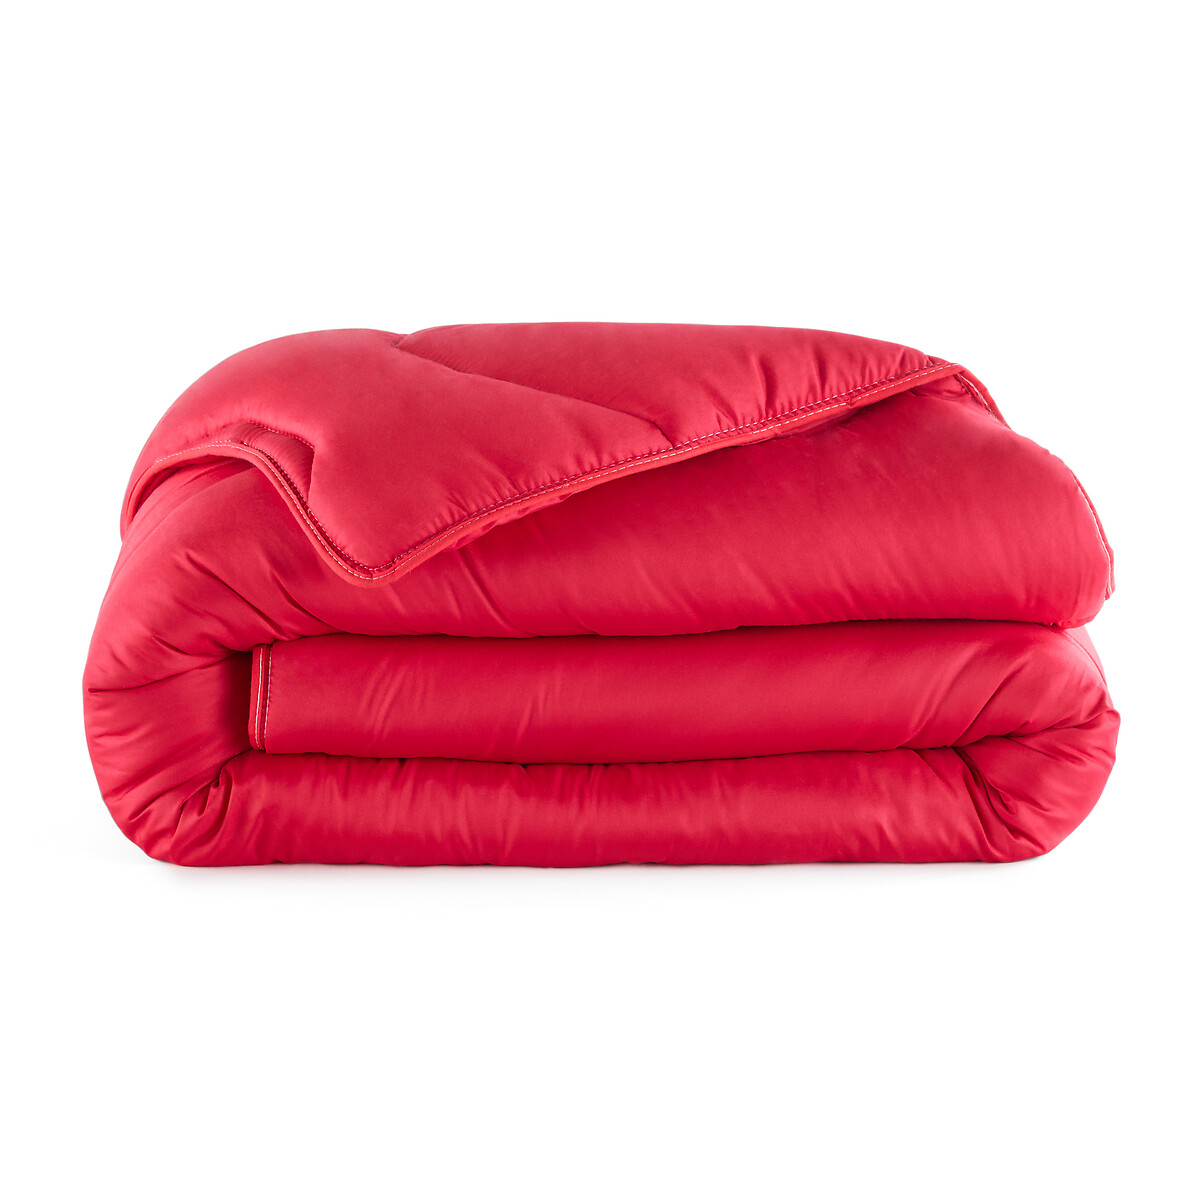 Одеяло La Redoute COLOR  полиэстера  гм 200 x 200 см красный, размер 200 x 200 см - фото 2